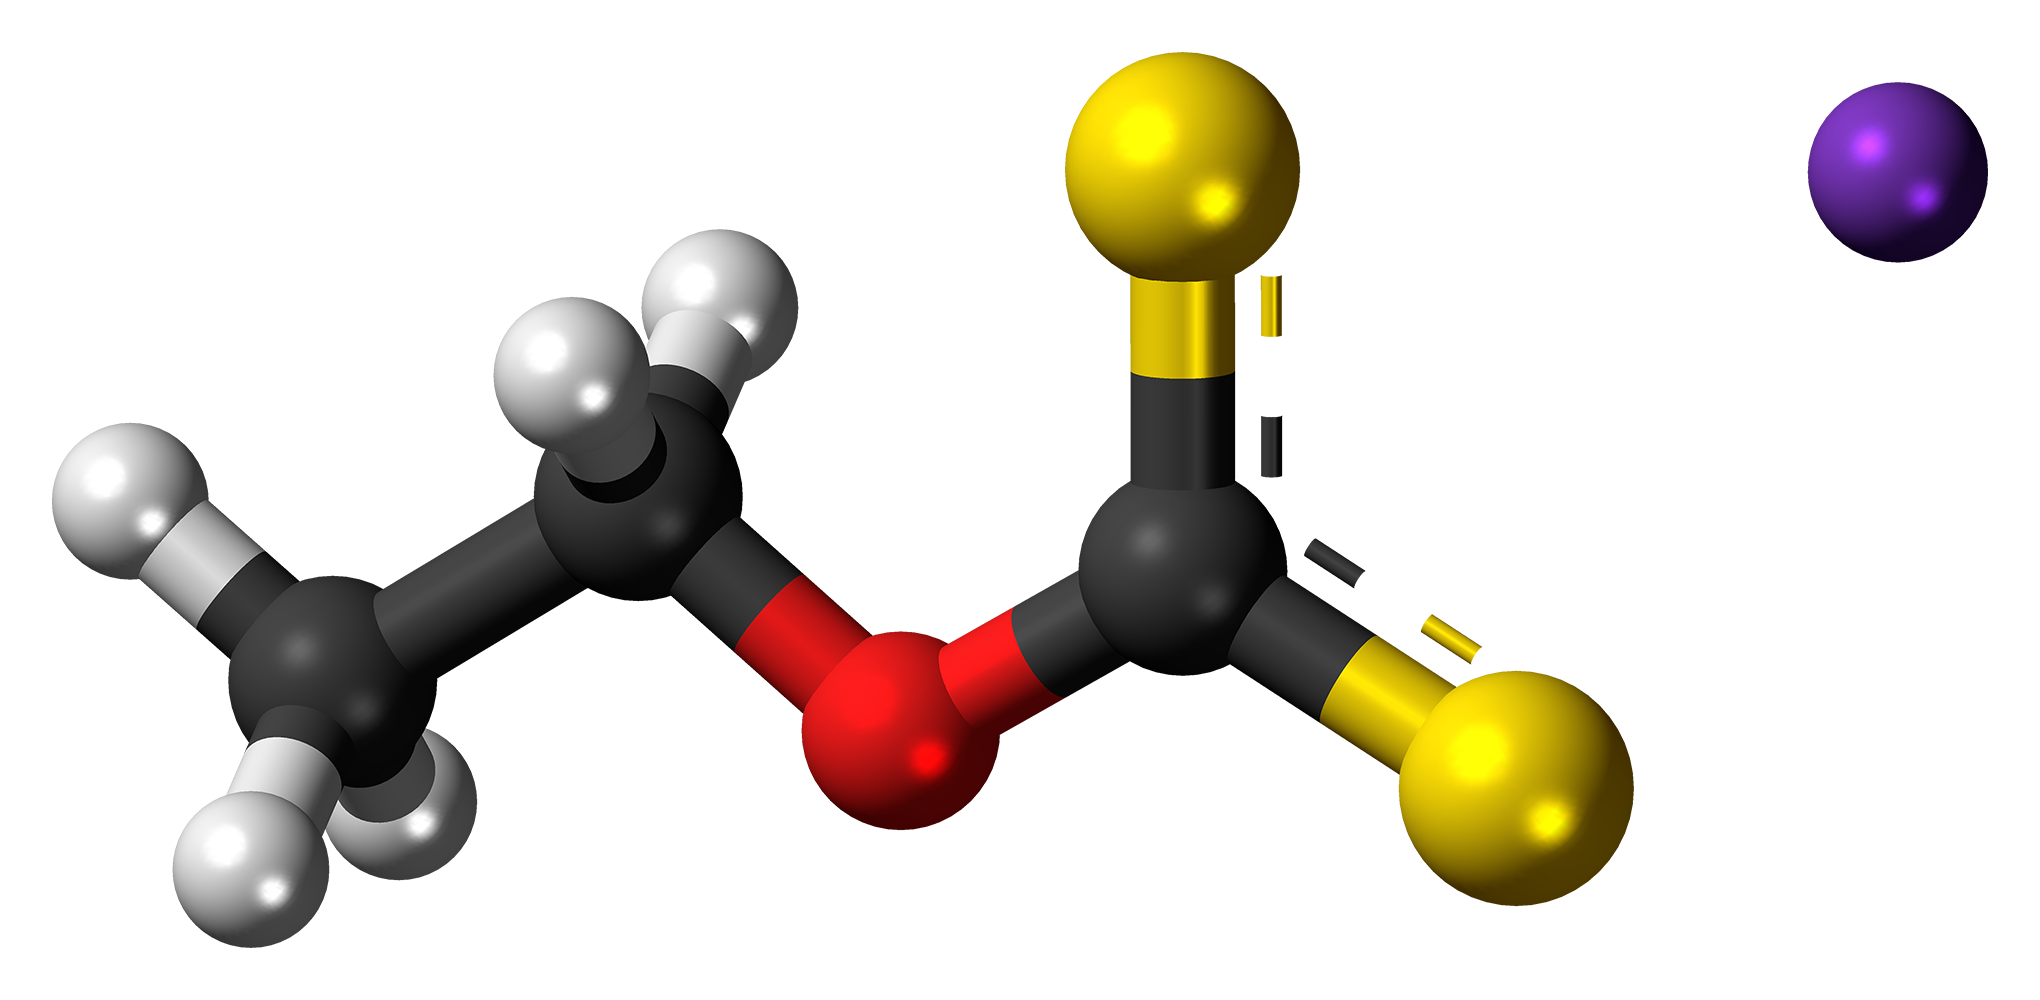 Этил натрия. Potassium ethyl Xanthate. Шаростержневая модель. Молекула калия. Молекула углерода.